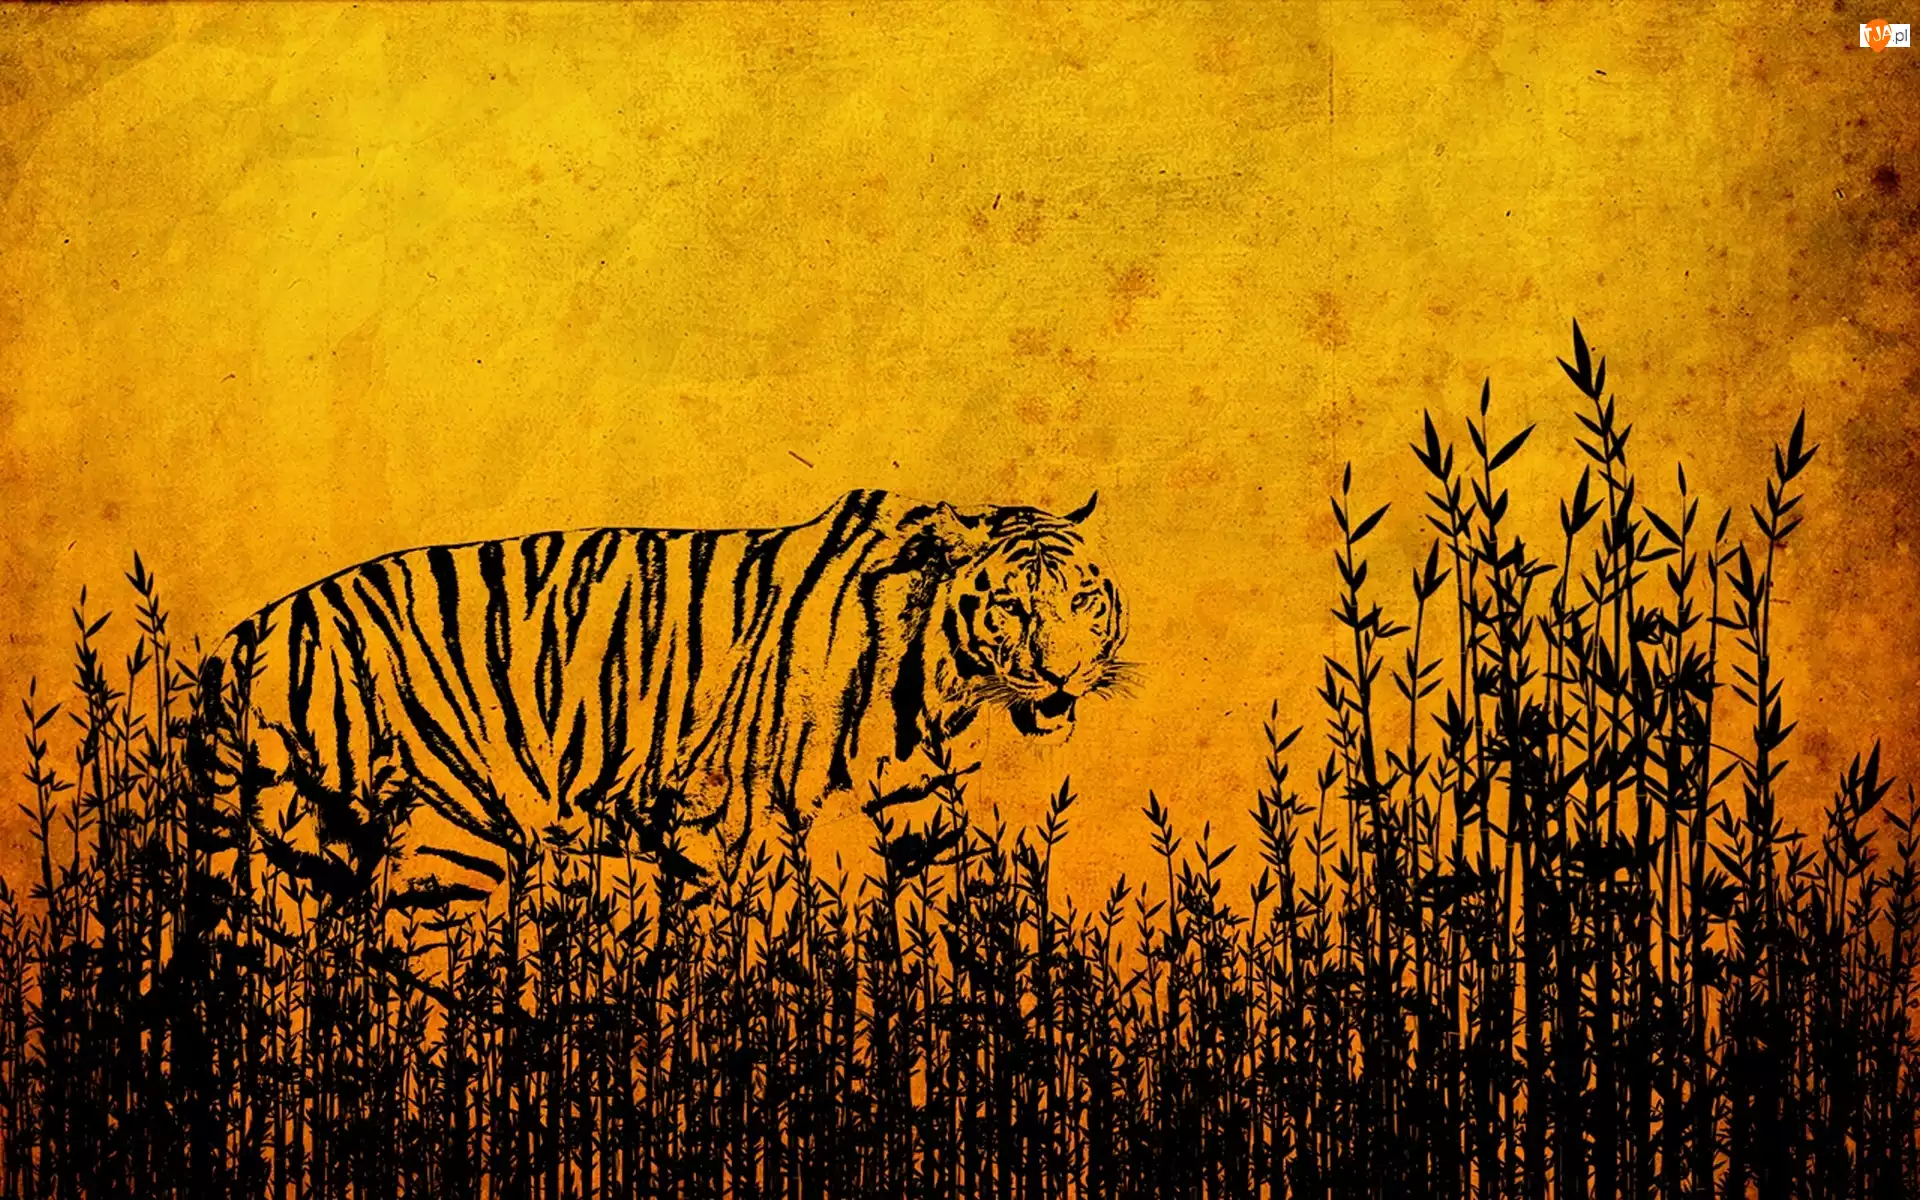 Rysunek, Tygrys